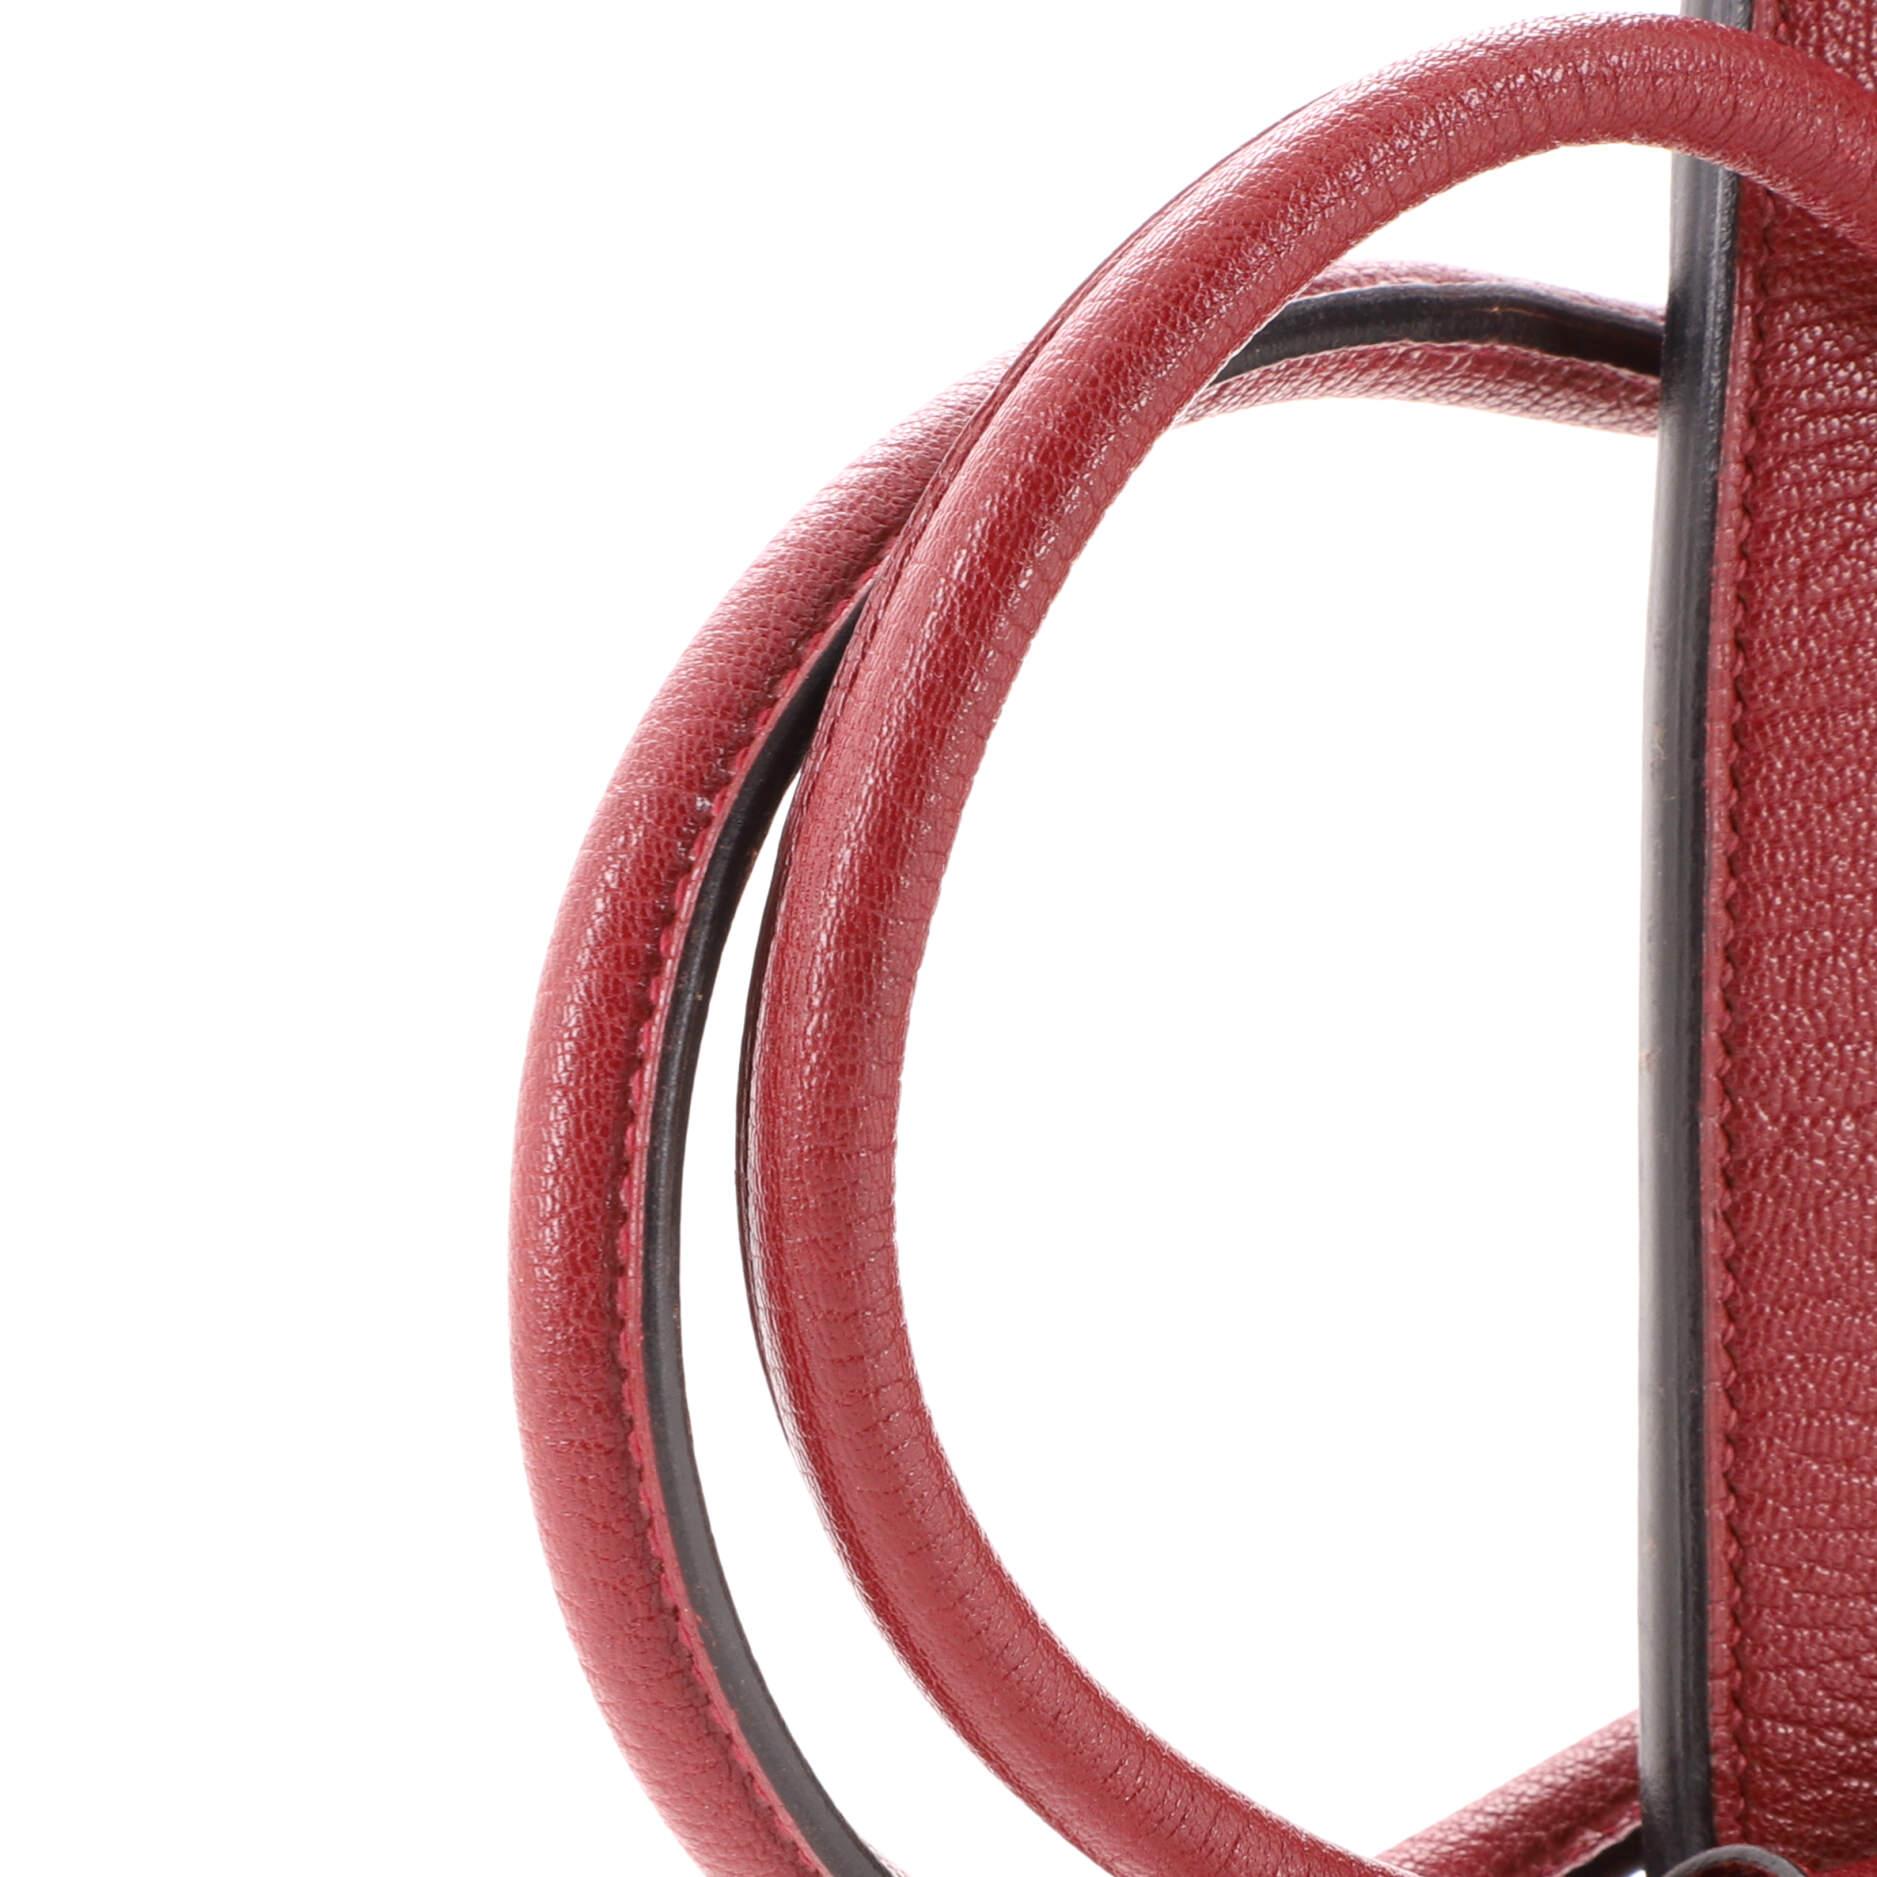 Hermes Birkin Handbag Rouge H Chevre de Coromandel with Gold Hardware 35 5